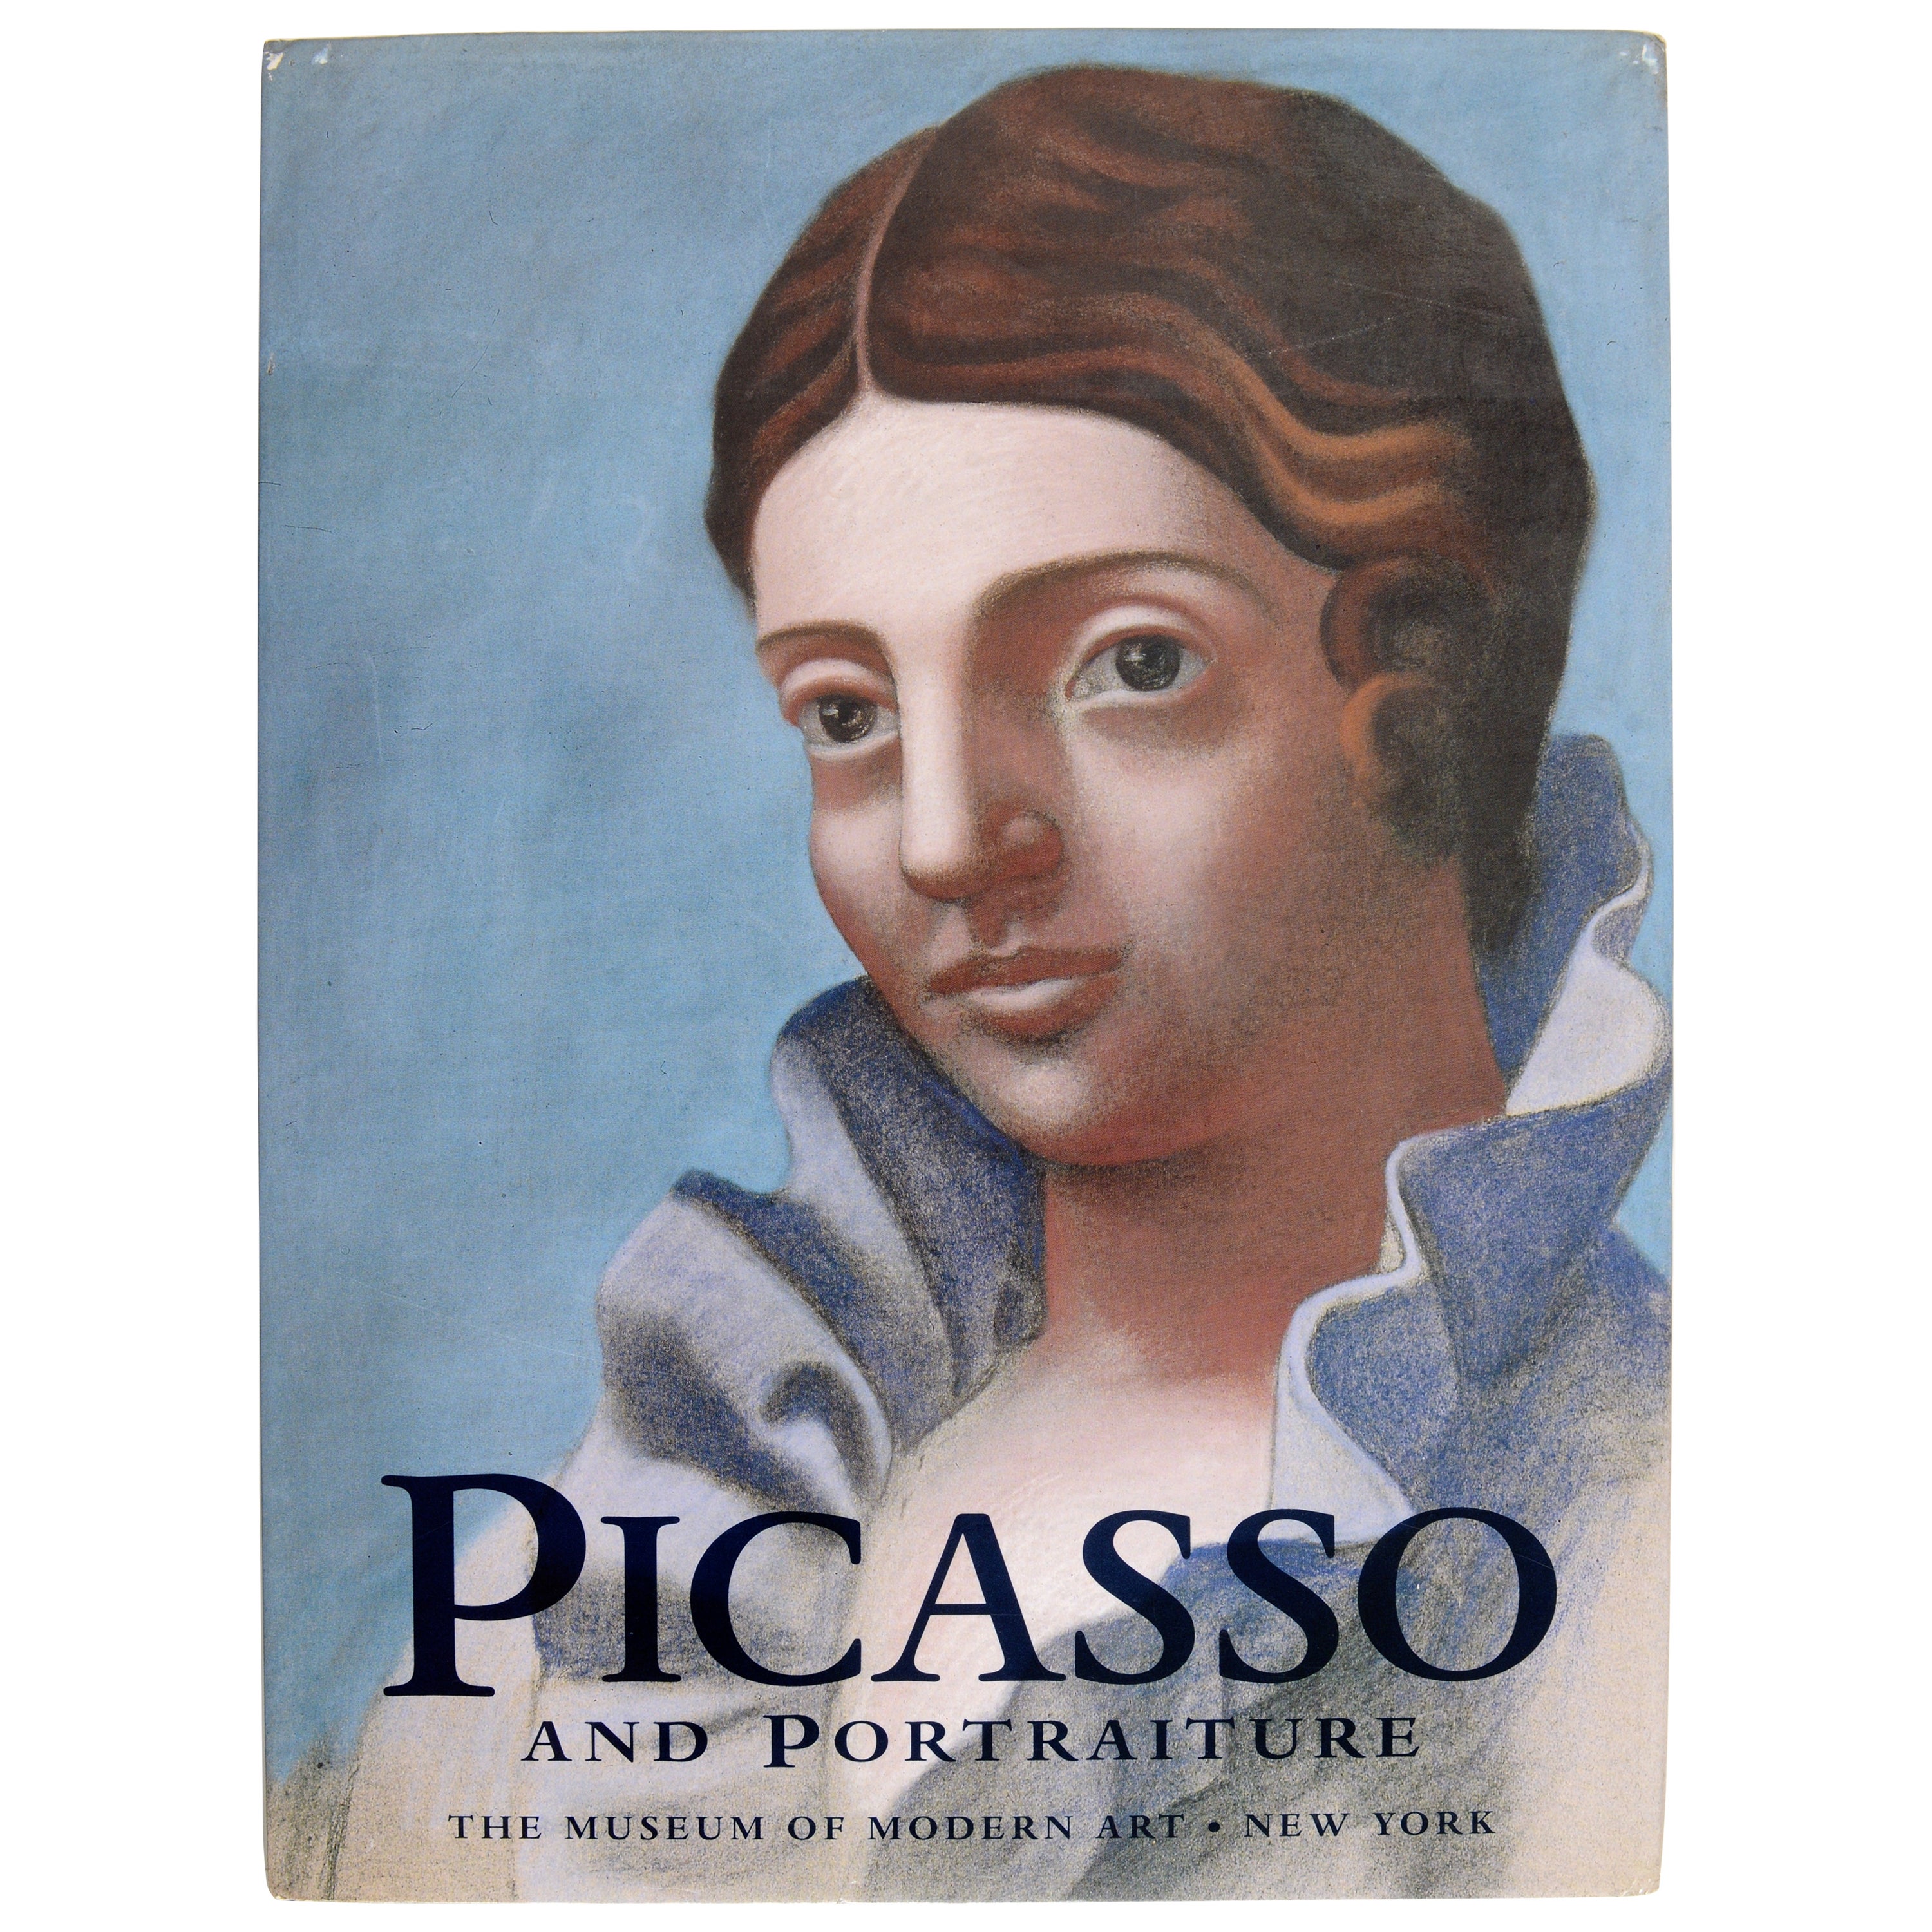 Picasso und Porträts, Repräsentation und Transformation, herausgegeben von William Rubin